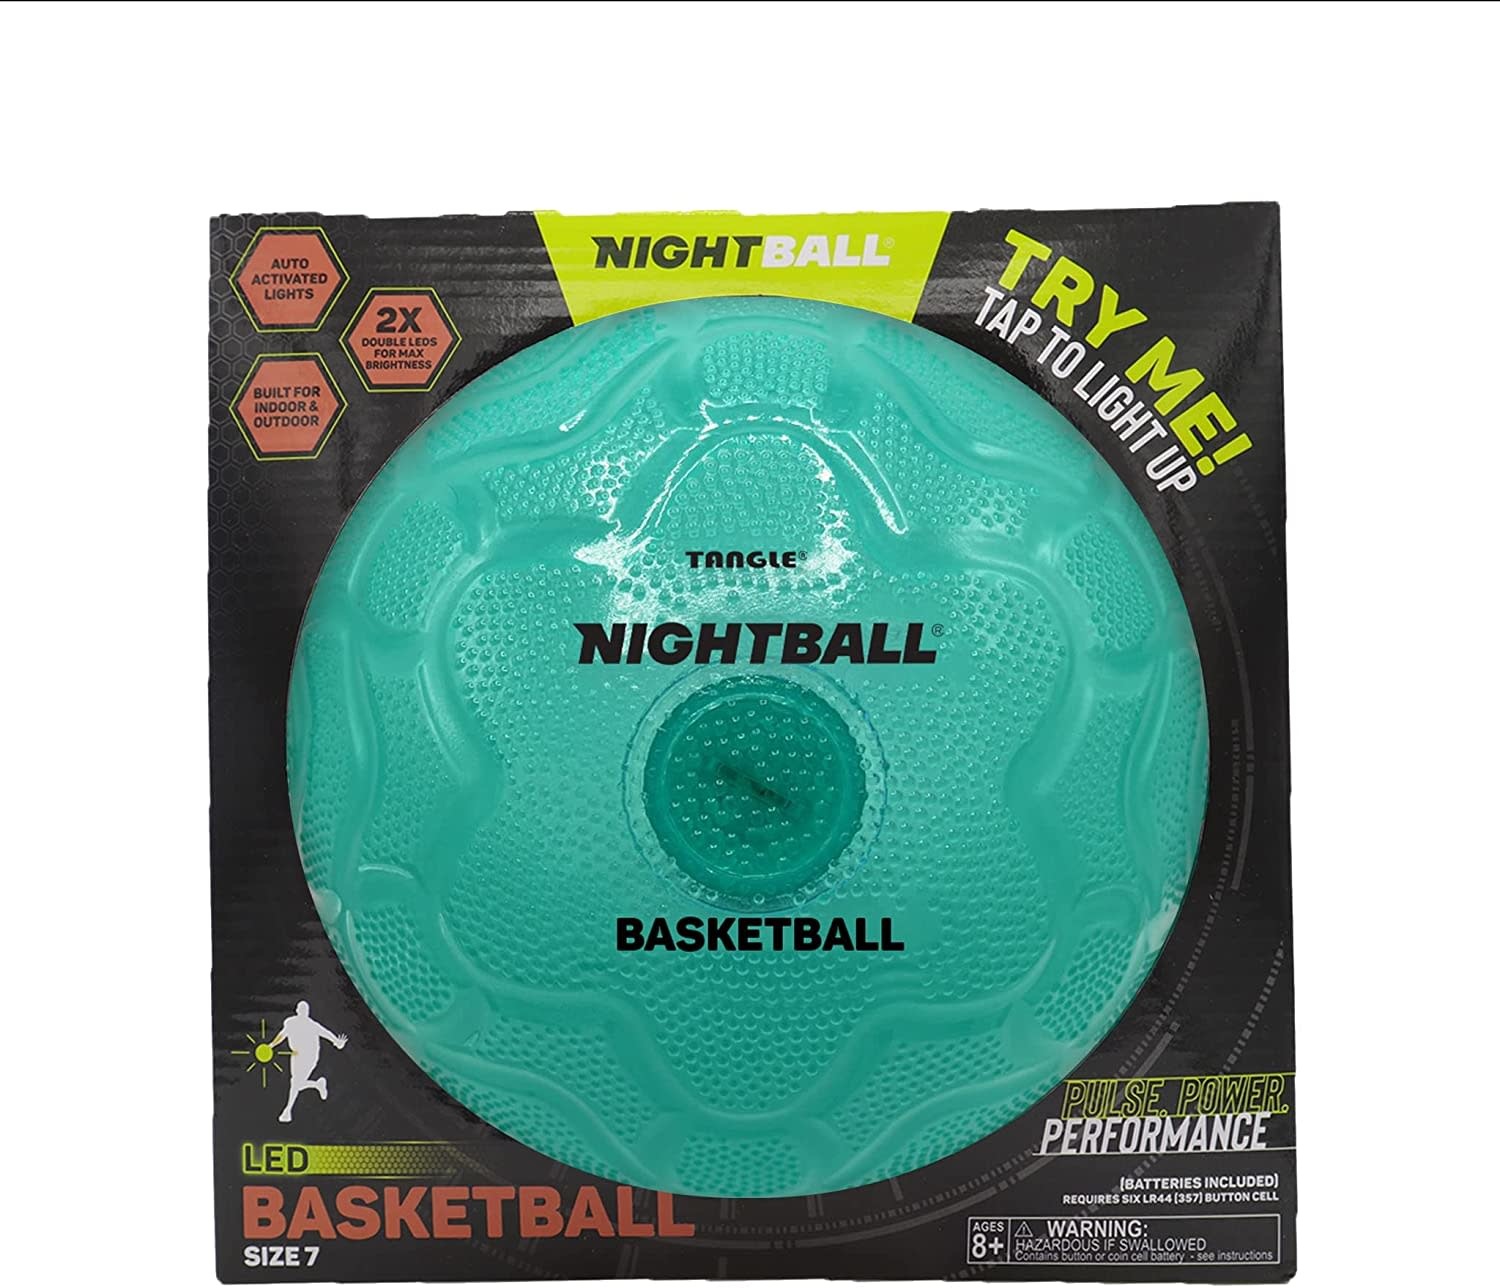 Tangle Nightball Basketball Teal-2